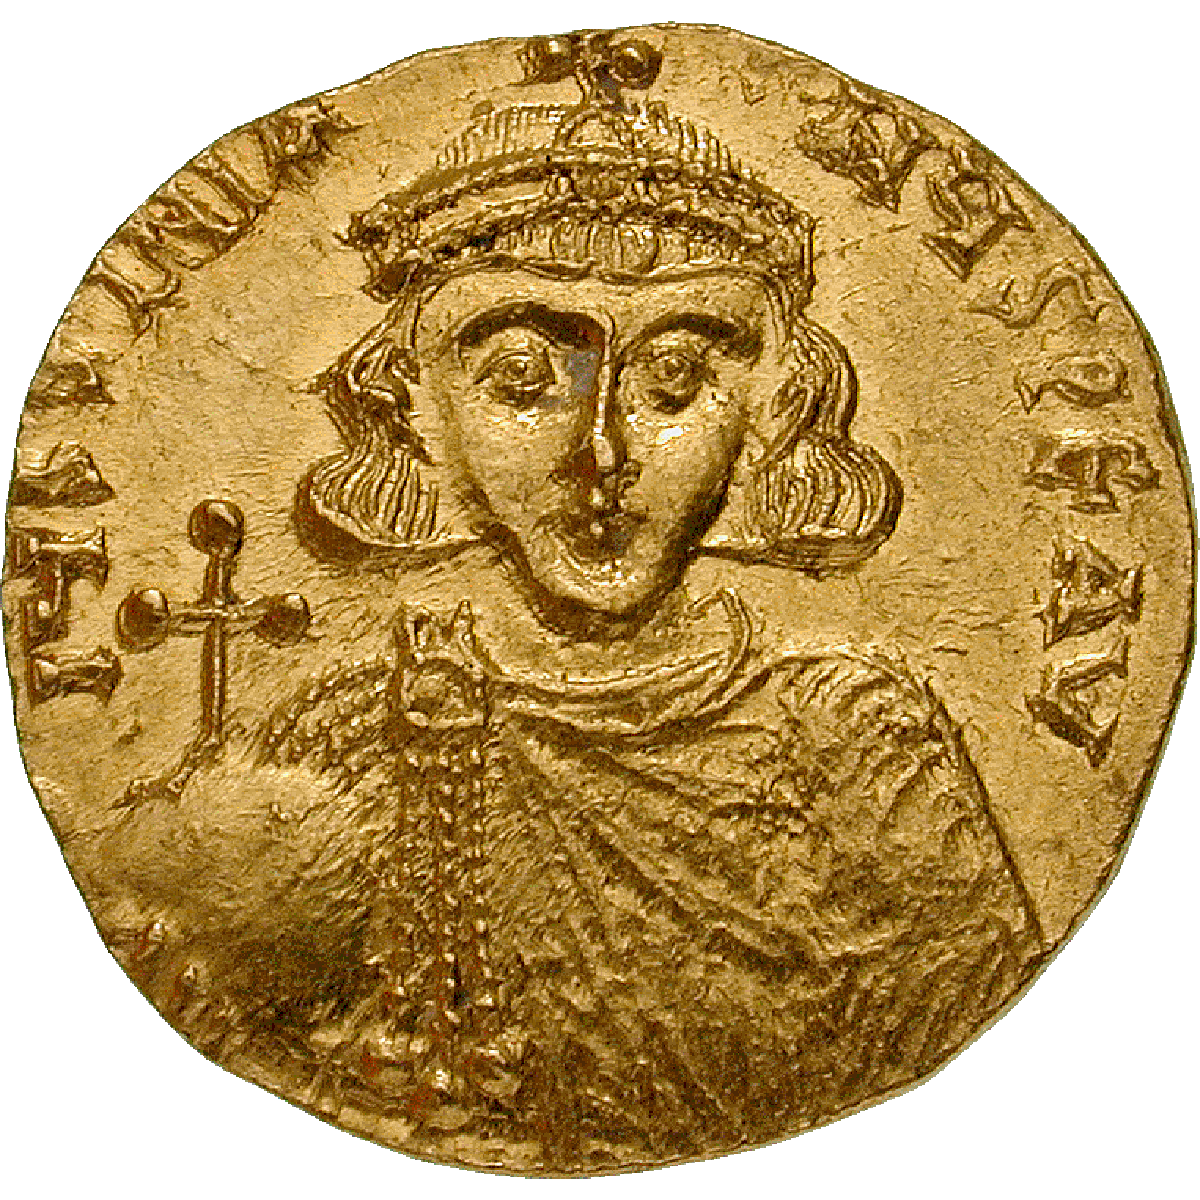 Byzantine Empire, Justinian II, Solidus, Constantinople (obverse)